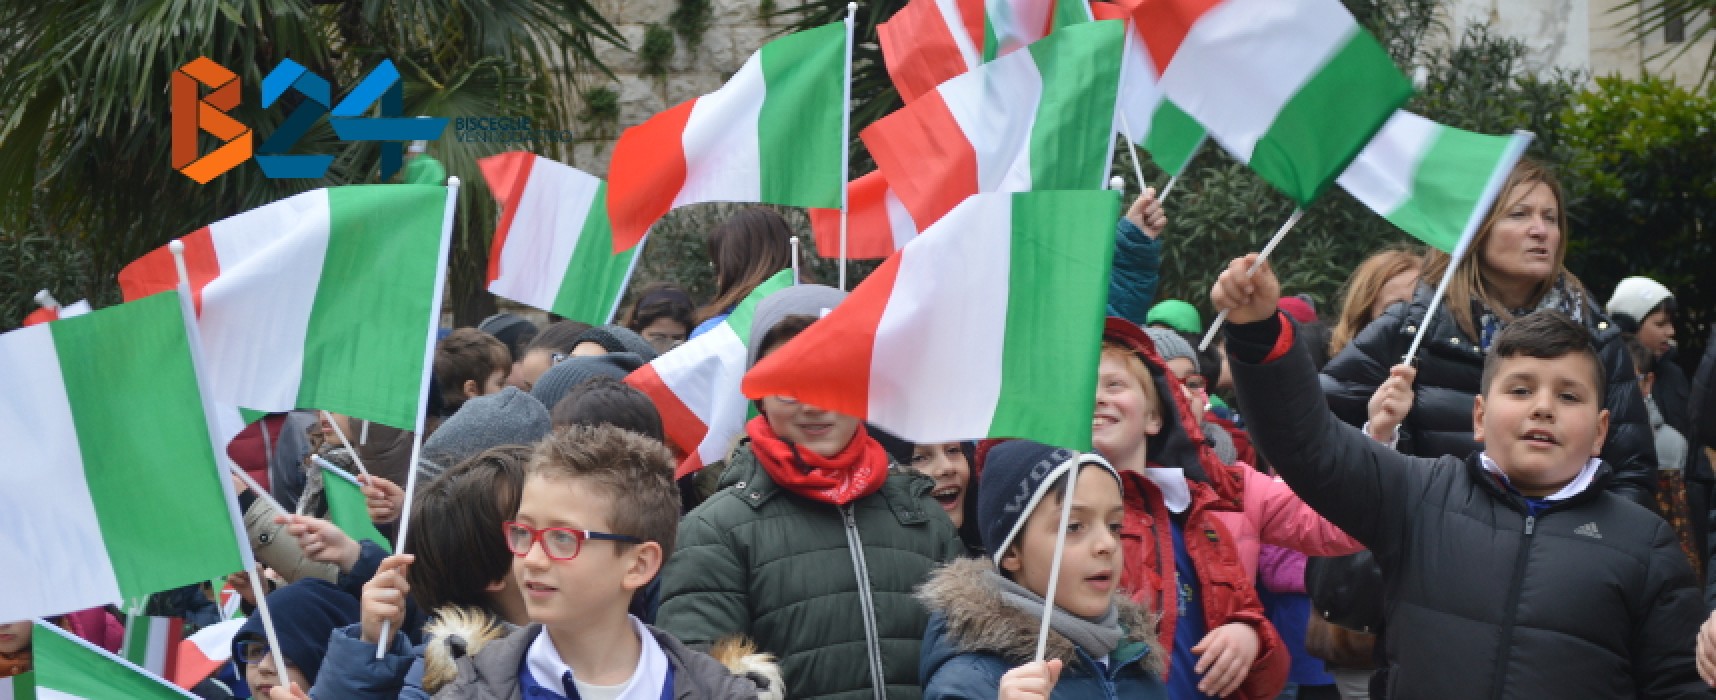 154esimo anniversario dell’Unità d’Italia, FOTO e VIDEO della celebrazione in città